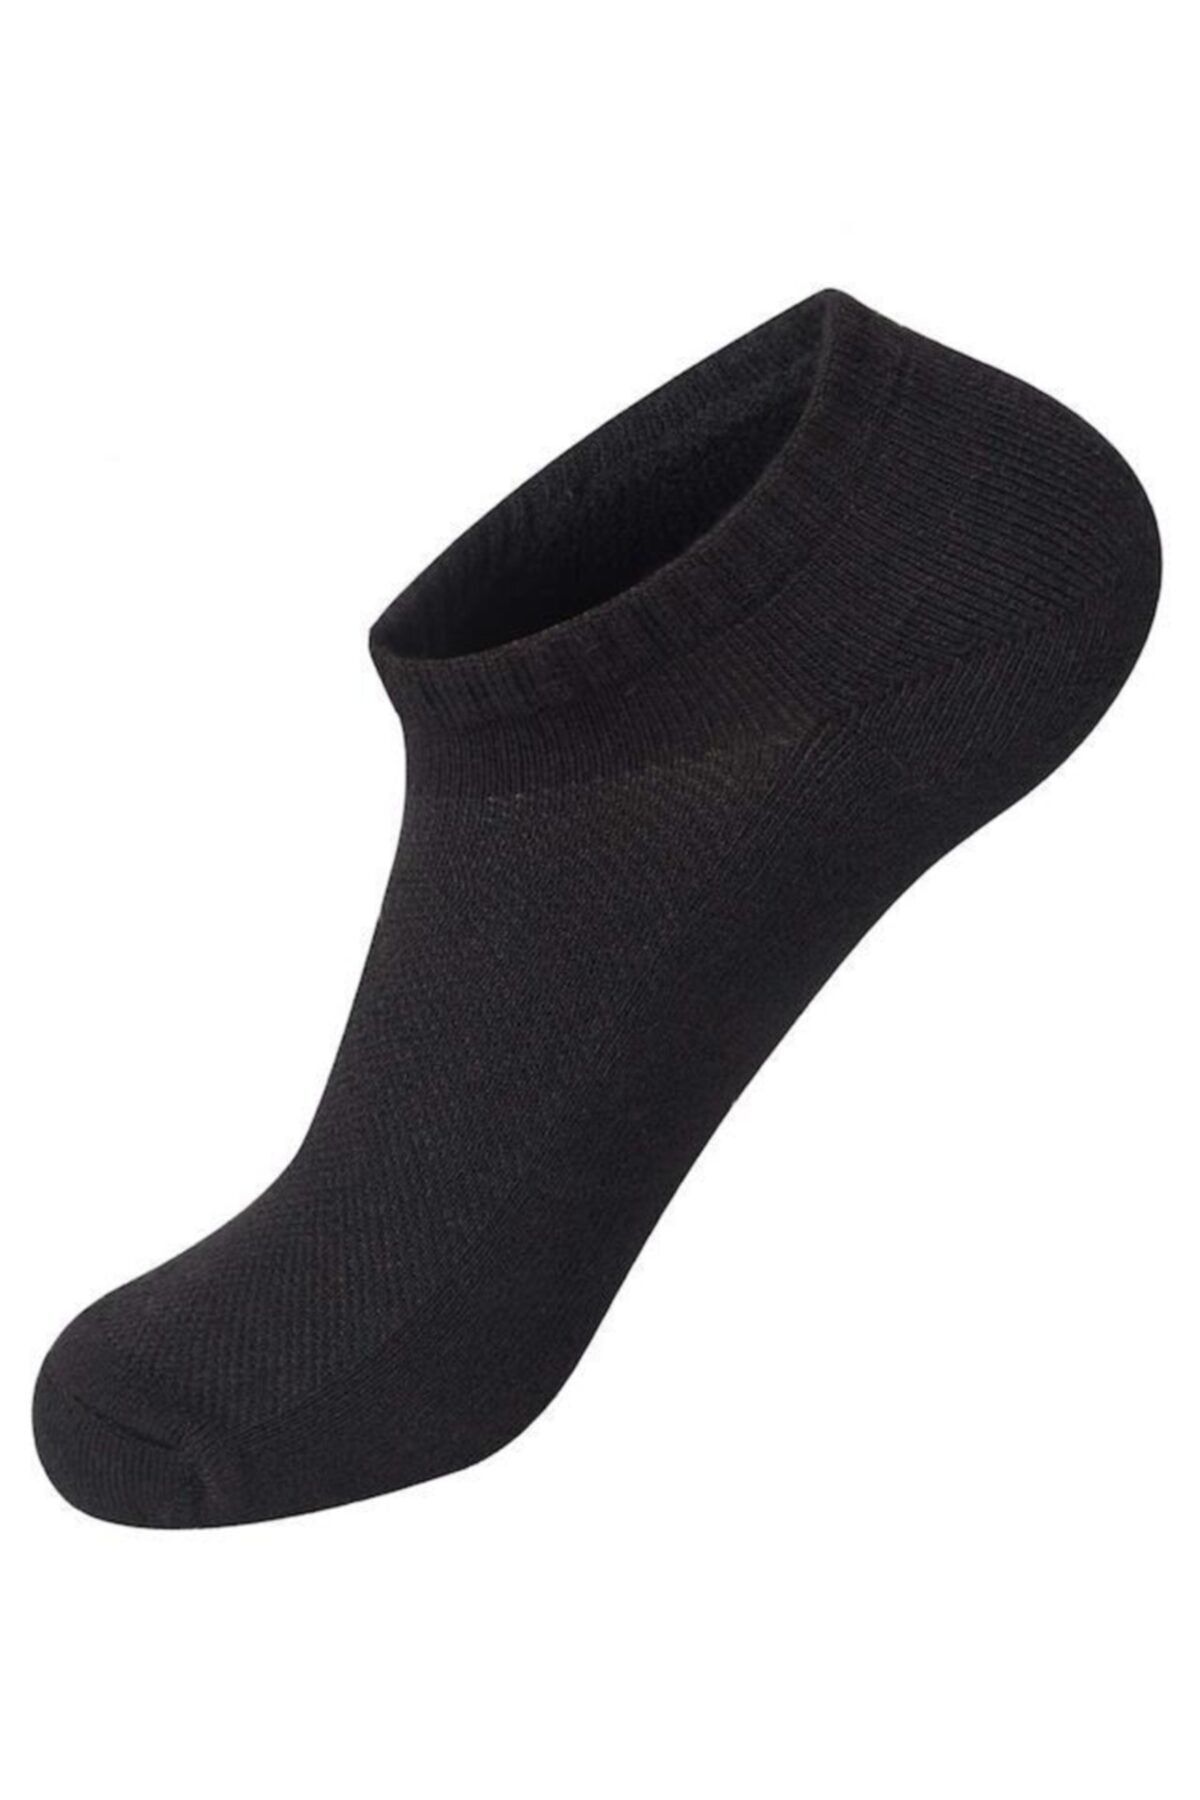 12 Çift Erkek Patik Çorap - Spor Ayakkabı Kısa Soket Çorabı